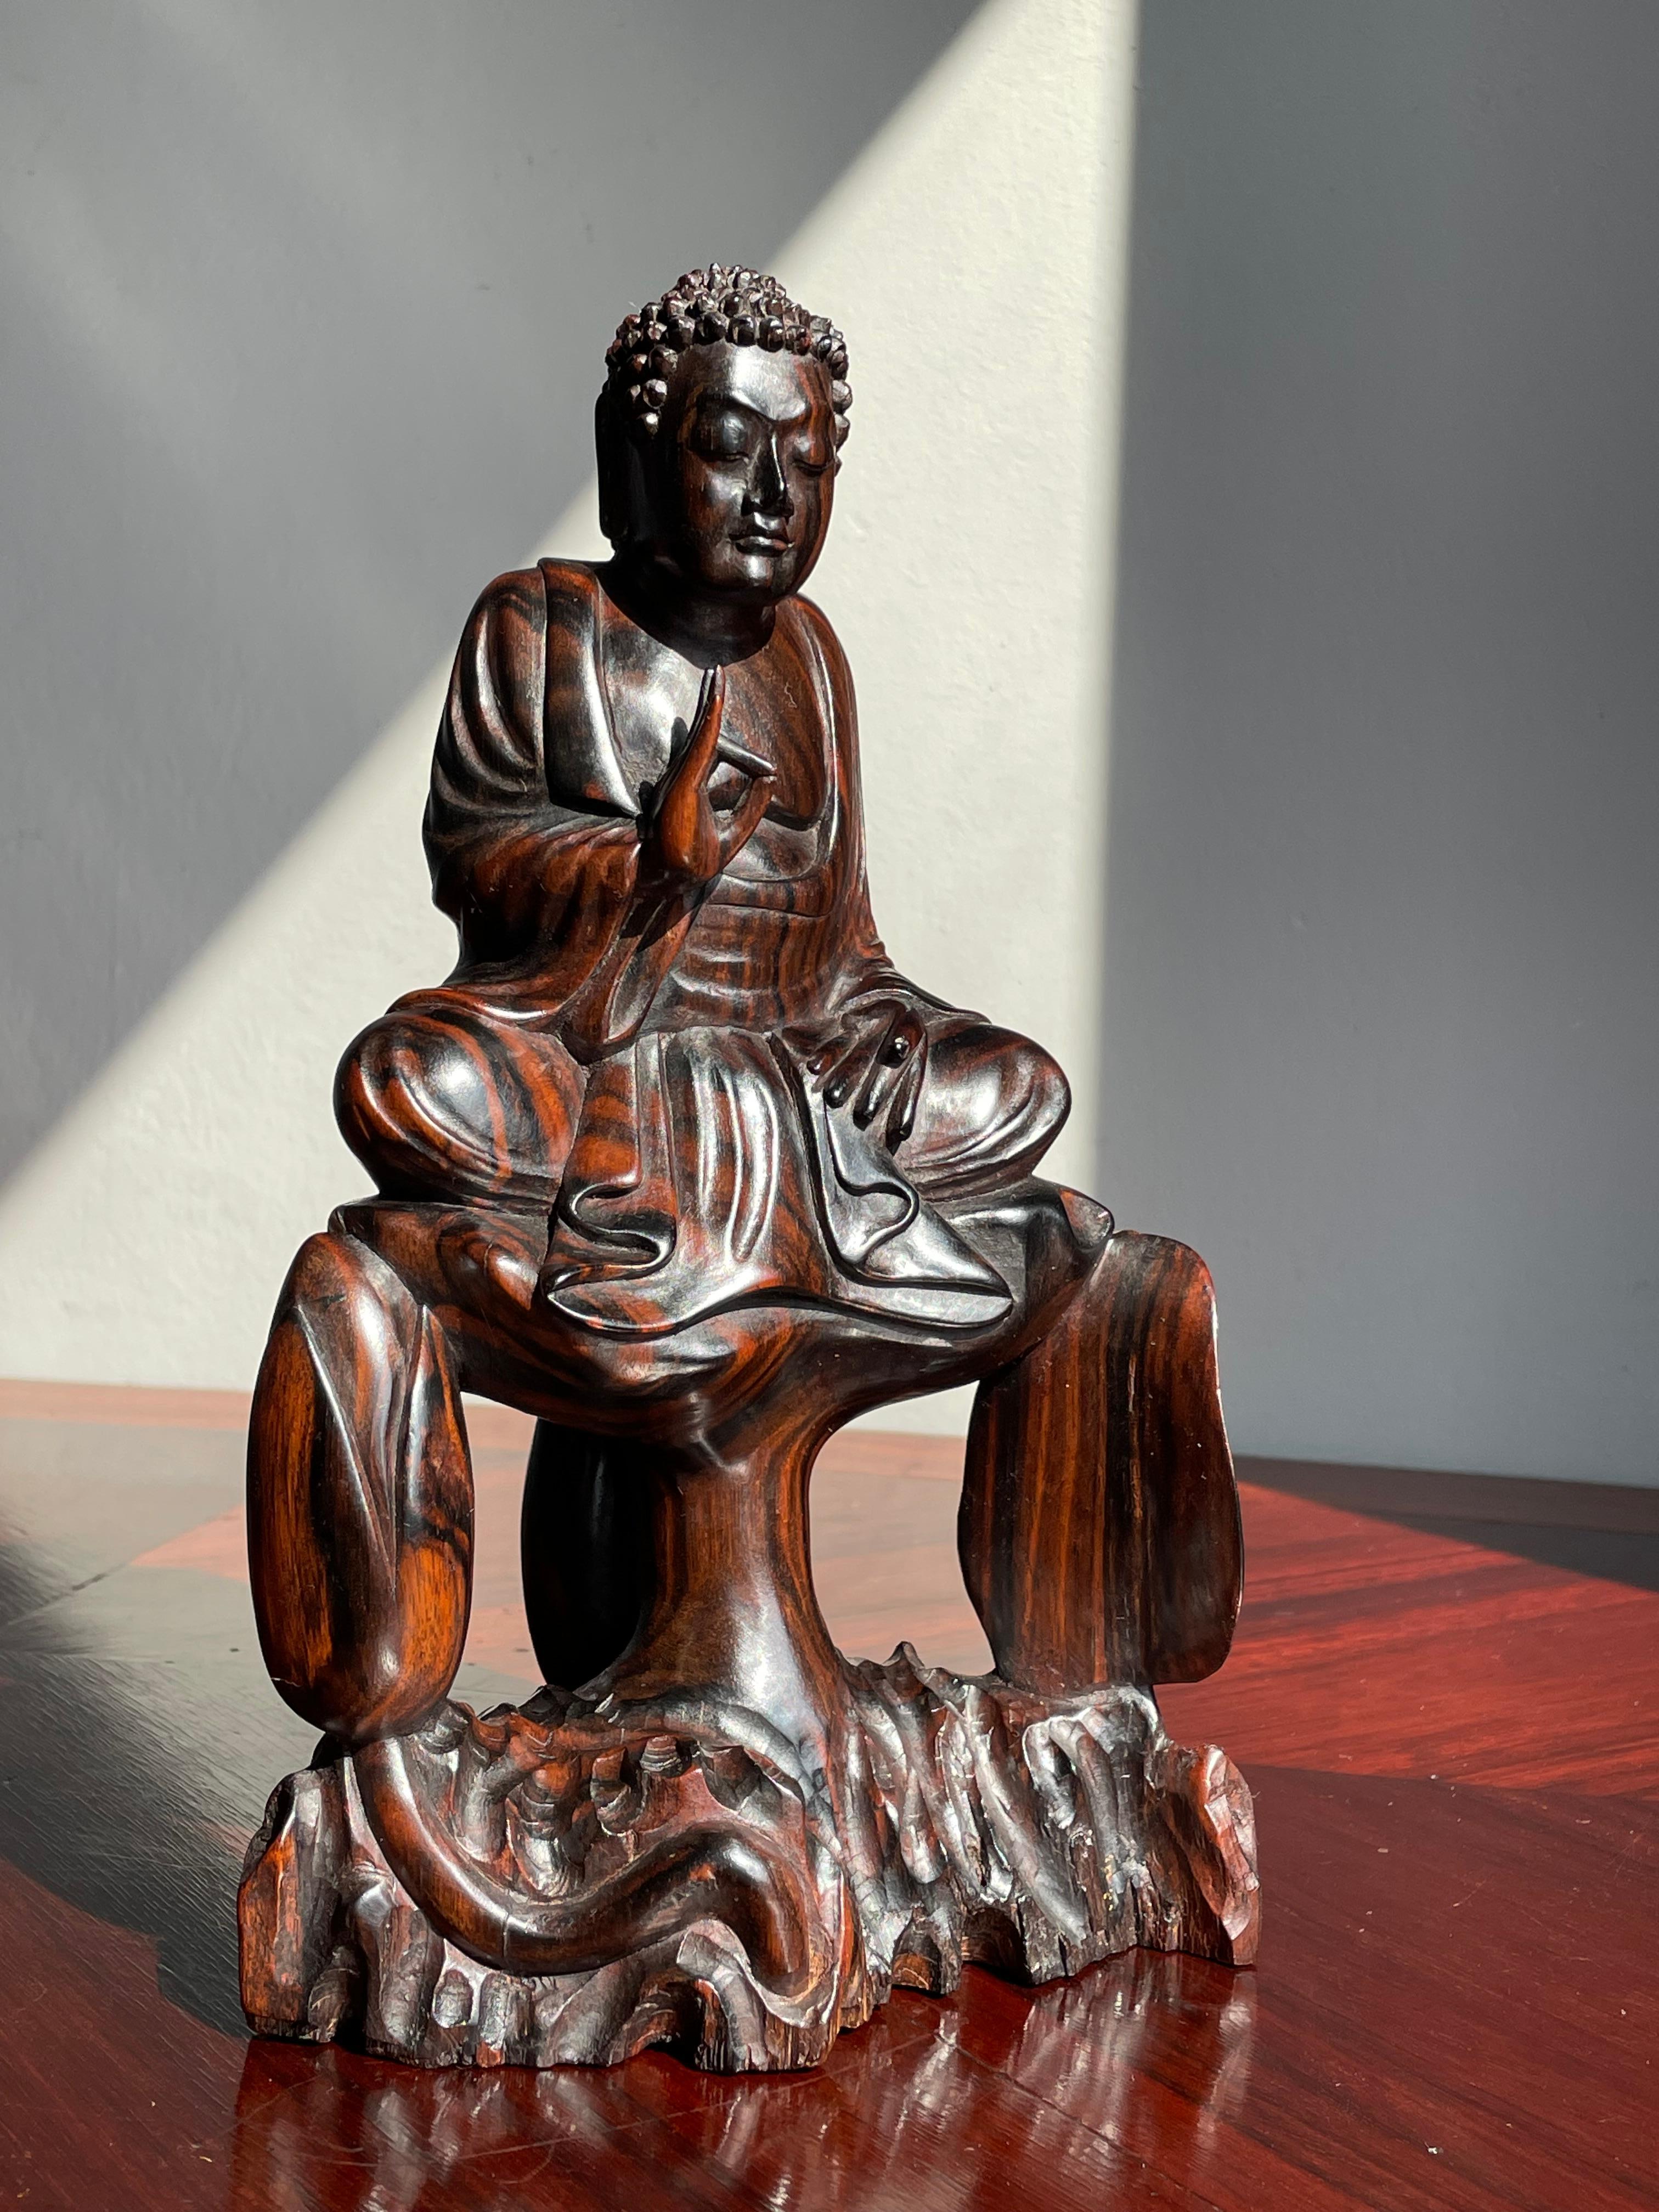 Unique sur la toile mondiale.

Ce magnifique bouddha assis de la lumière infinie est entièrement sculpté à la main dans un superbe morceau de bois de coromandel. Les différentes teintes chaudes de ce bois dur coûteux rendent ce bouddha serein encore